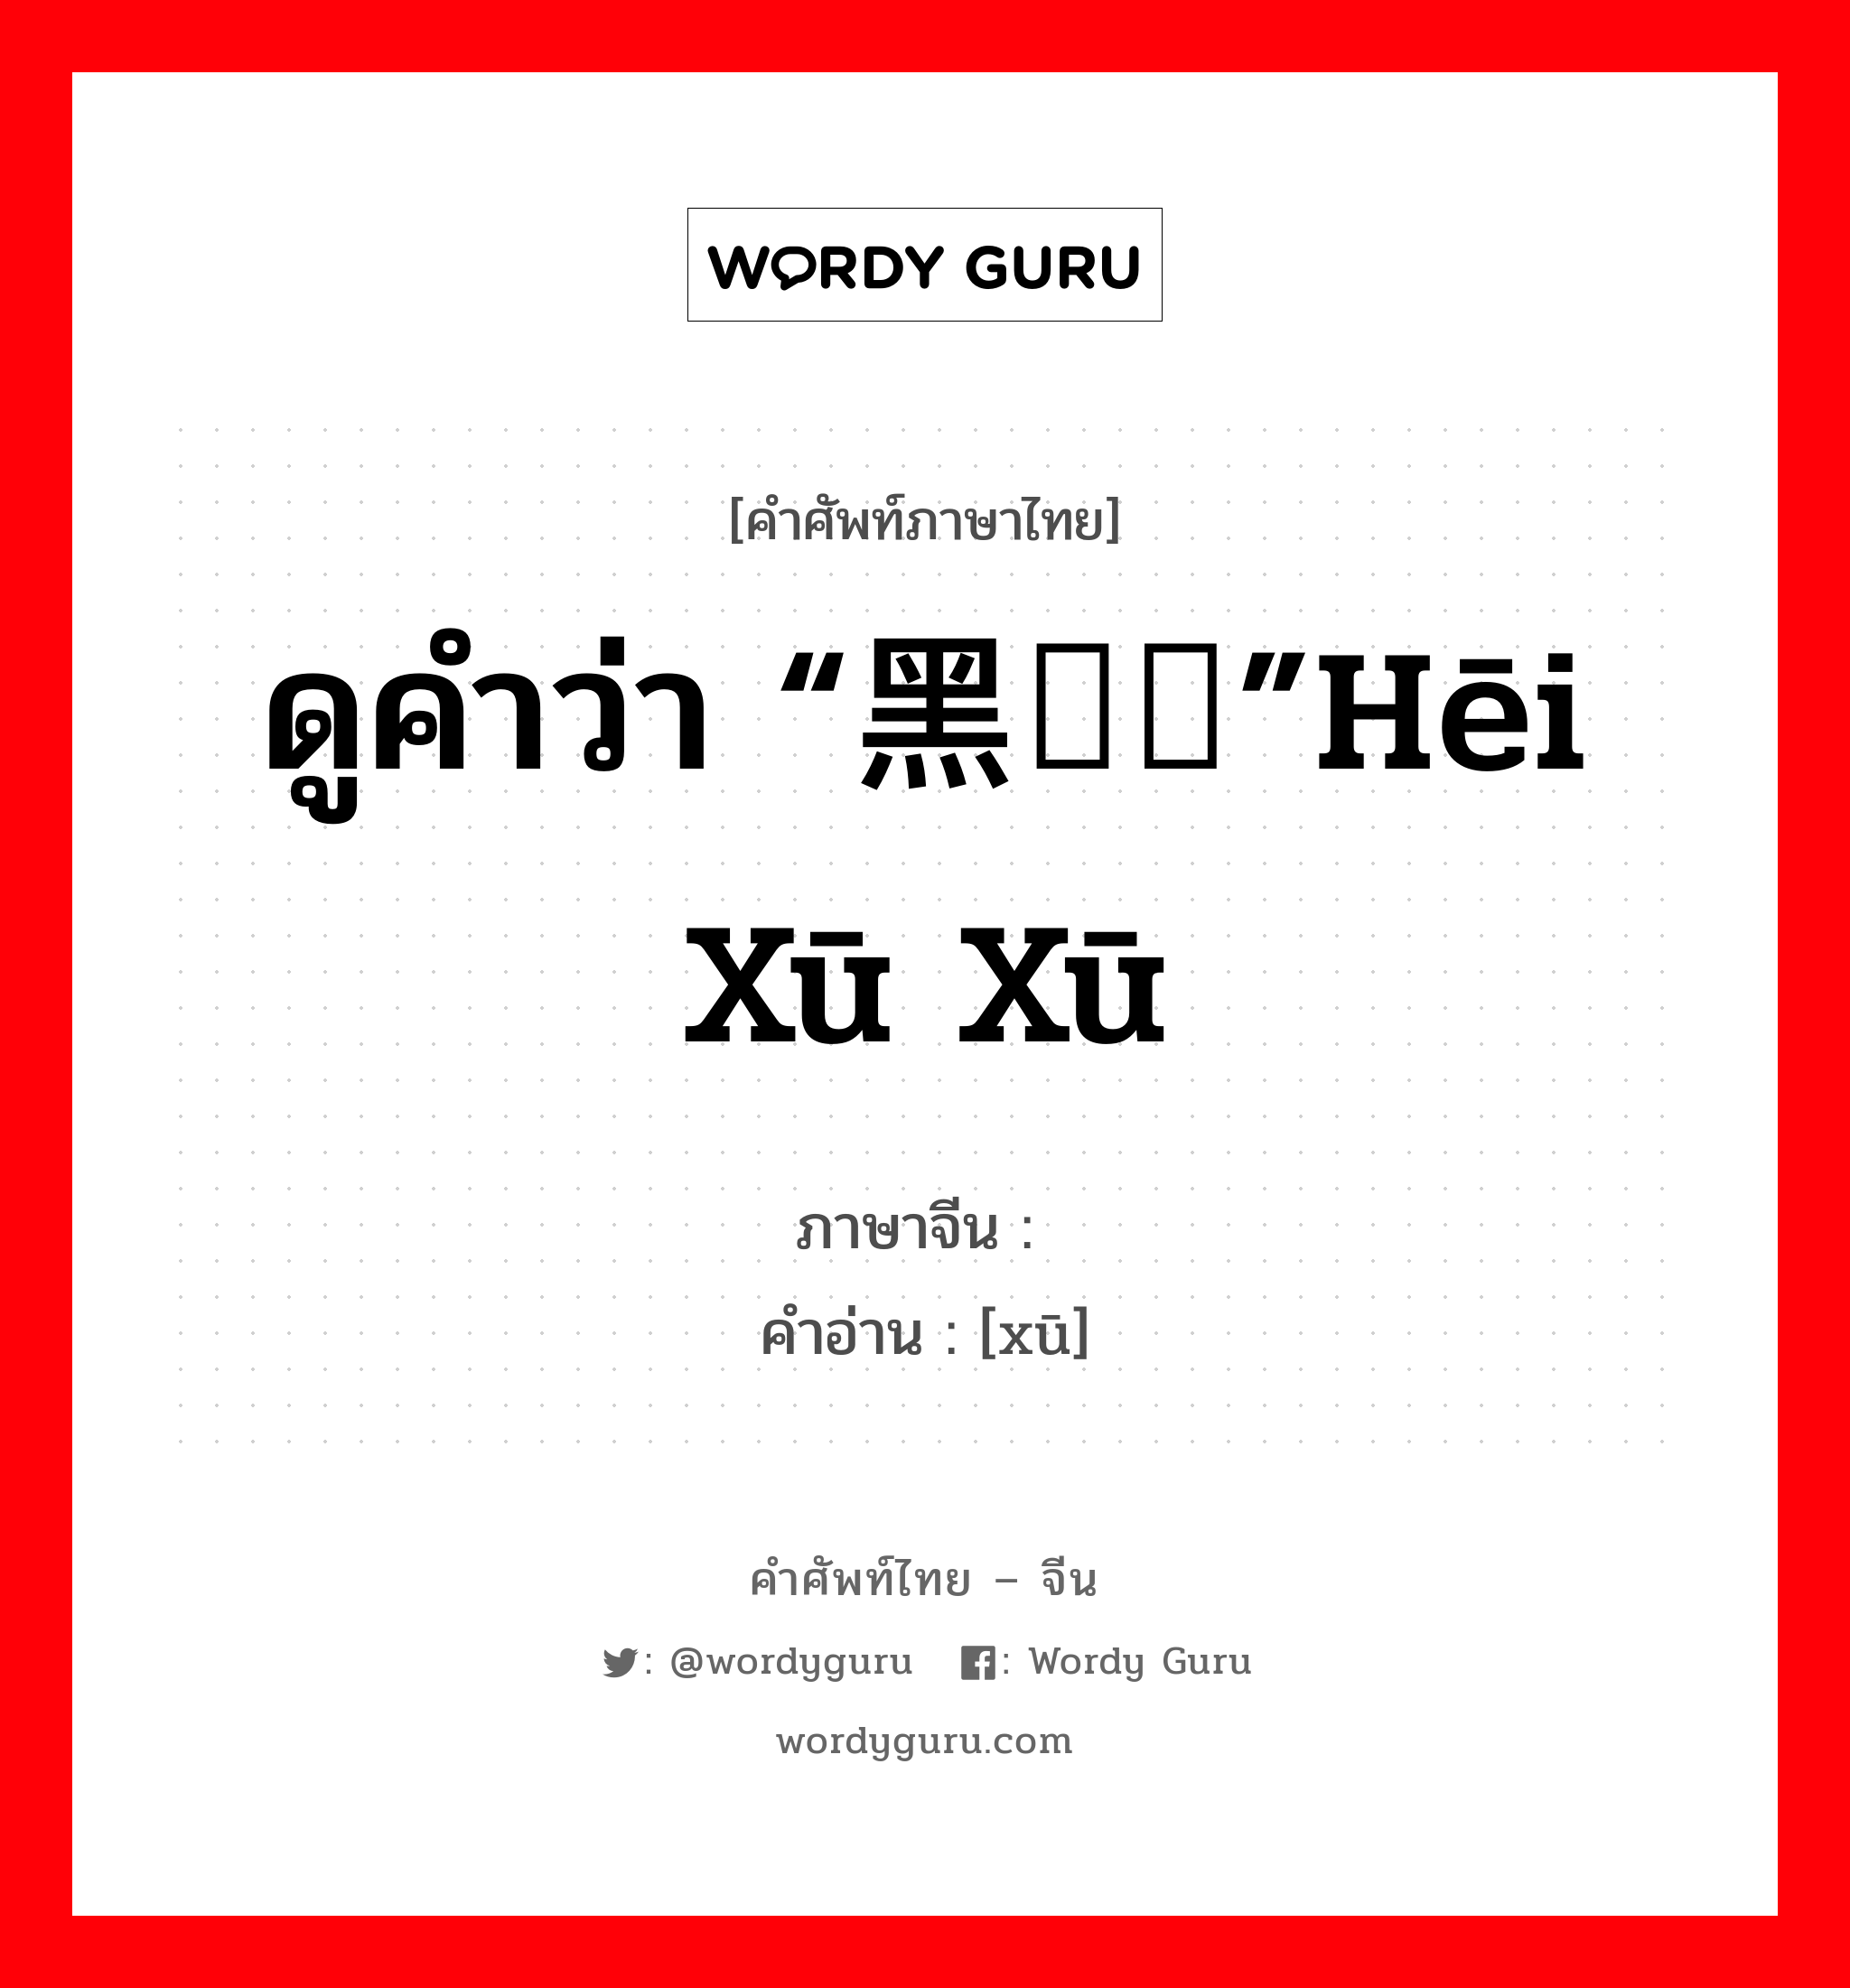 ดูคำว่า “黑魆魆”hēi xū xū ภาษาจีนคืออะไร, คำศัพท์ภาษาไทย - จีน ดูคำว่า “黑魆魆”hēi xū xū ภาษาจีน 魆 คำอ่าน [xū]